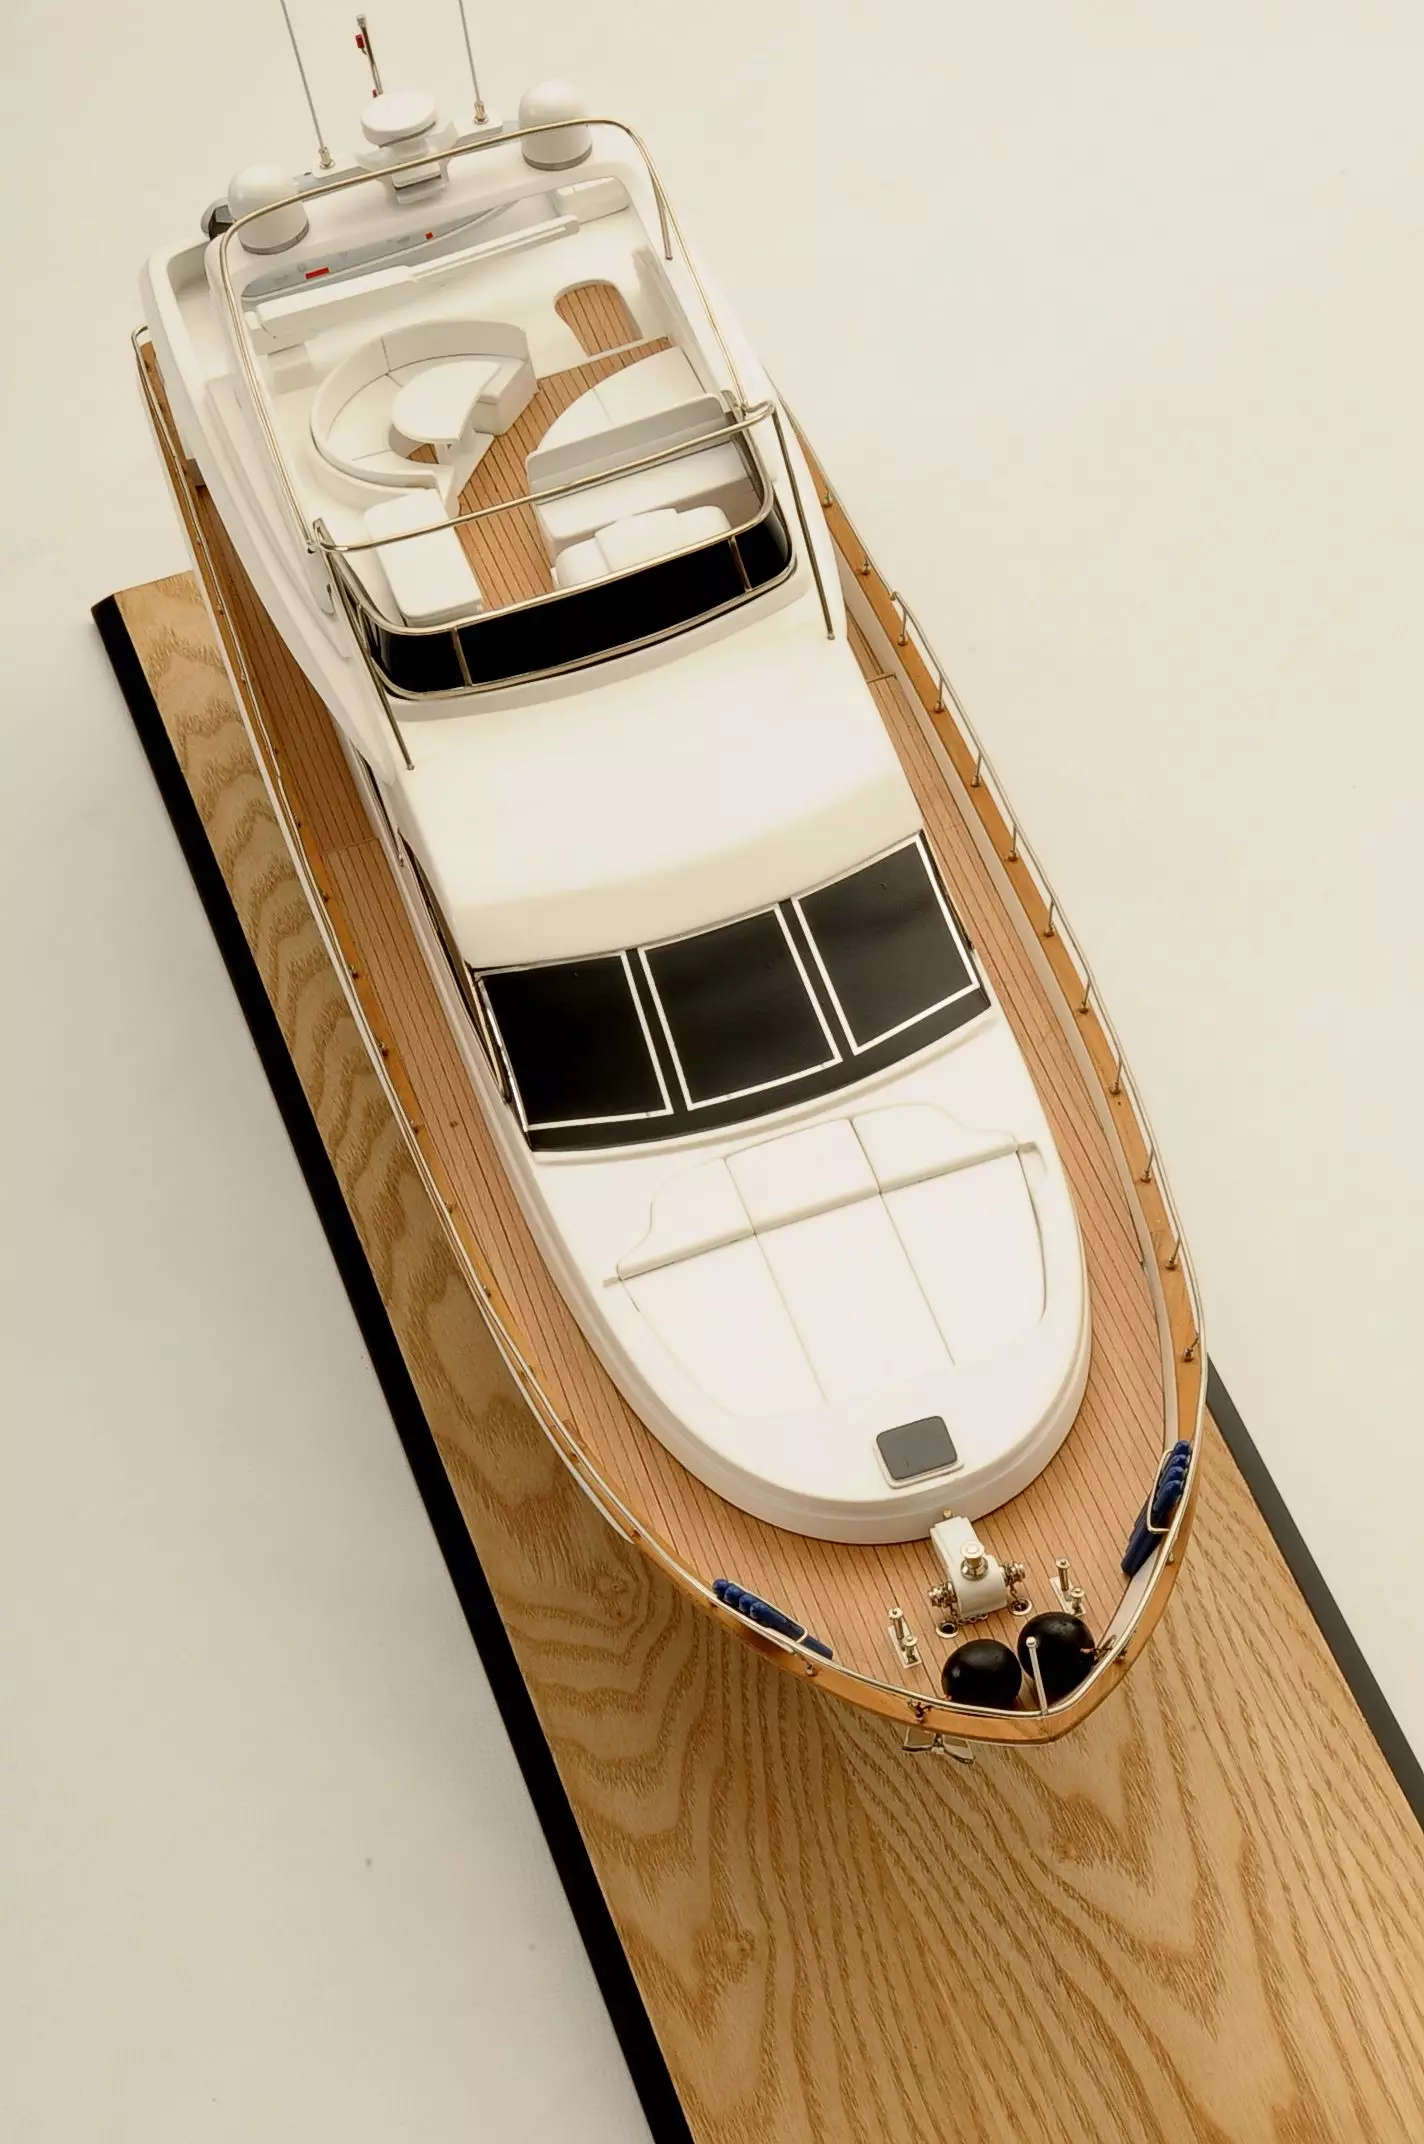 Astondoa 72 GLX Motor Yacht